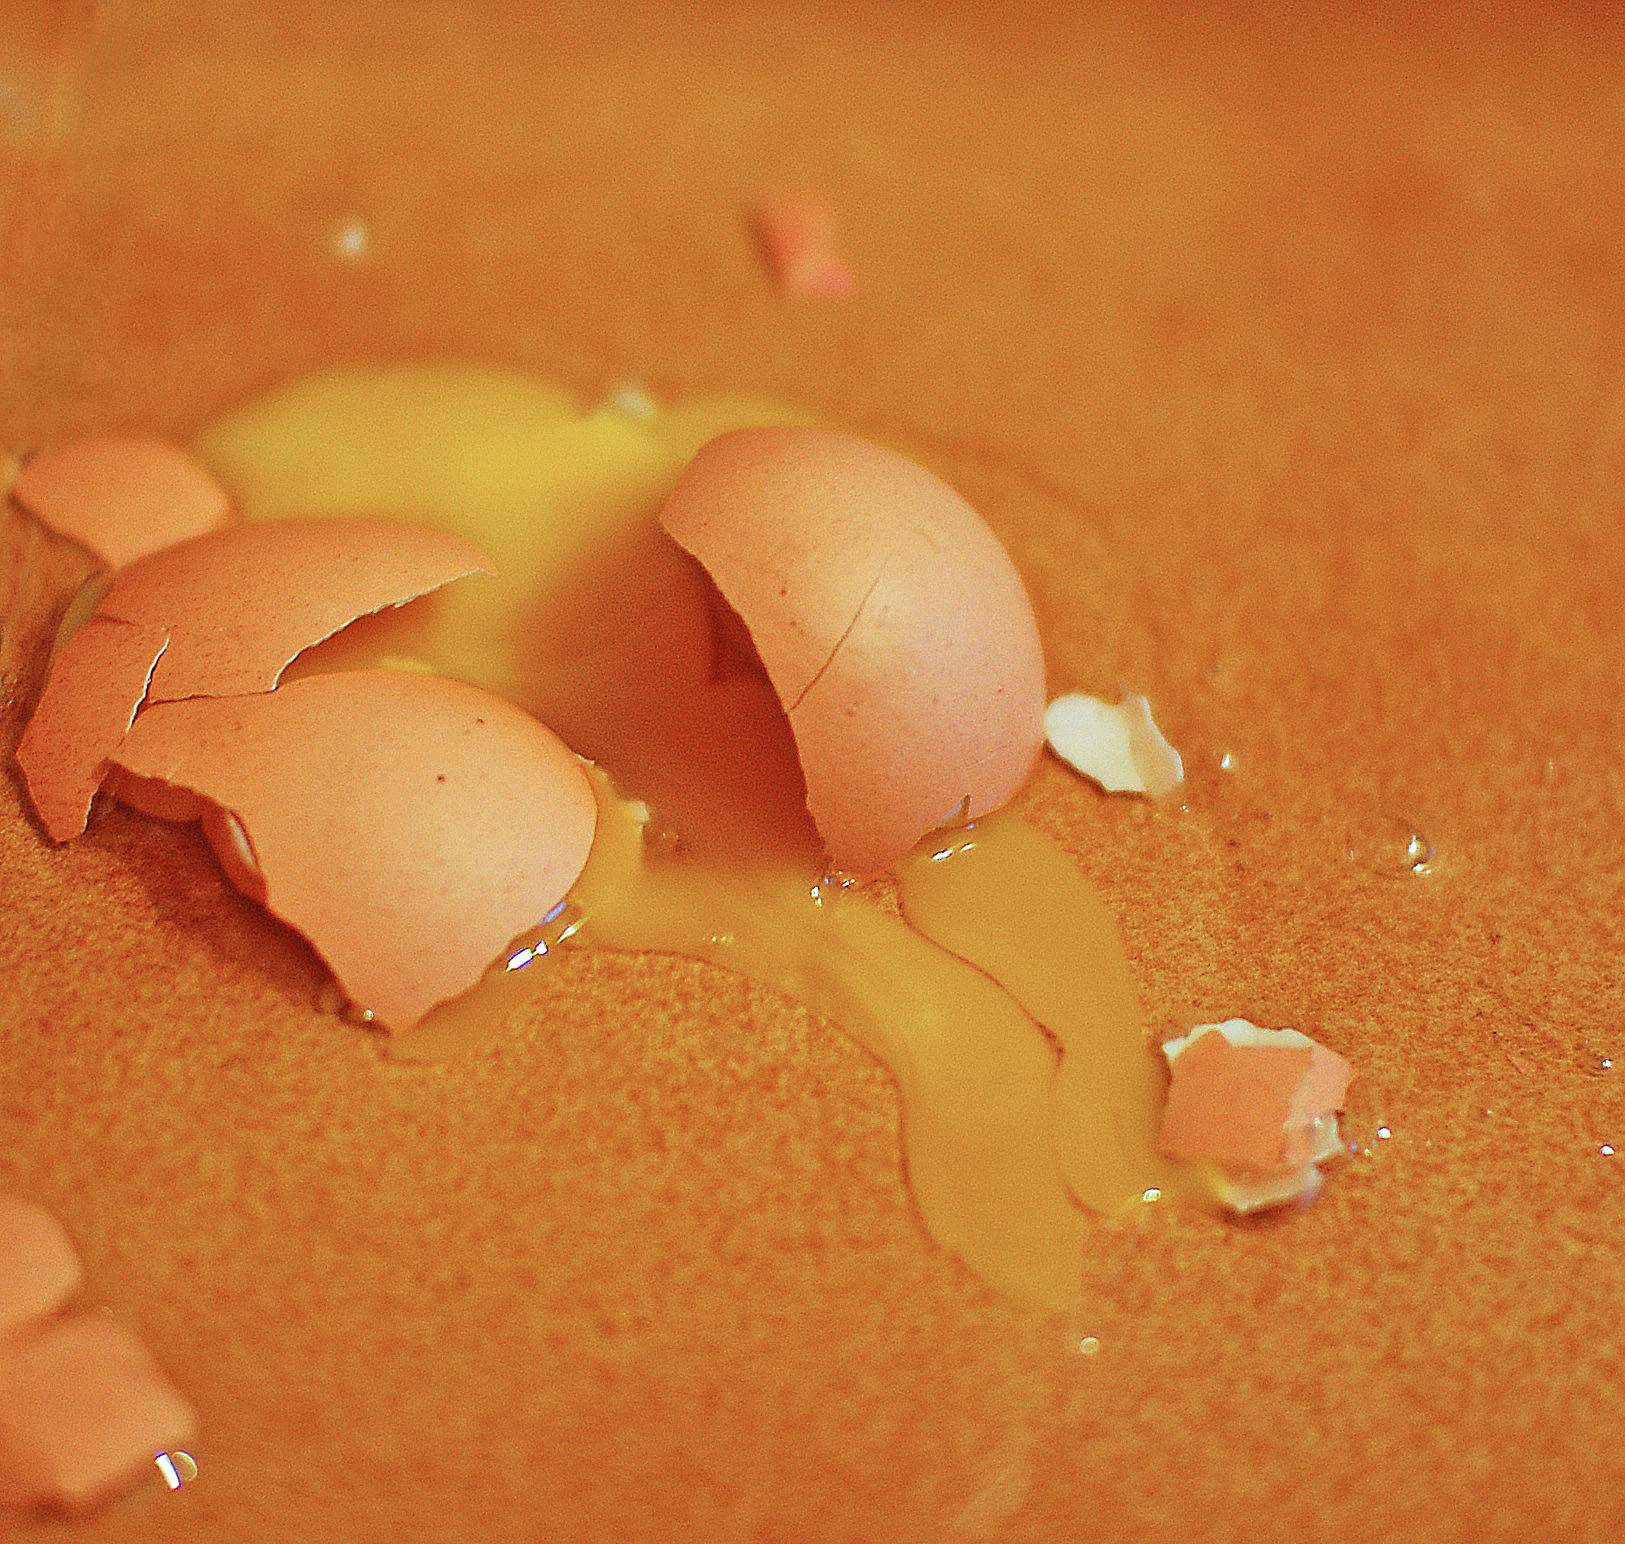 Broken_egg_orange.jpg